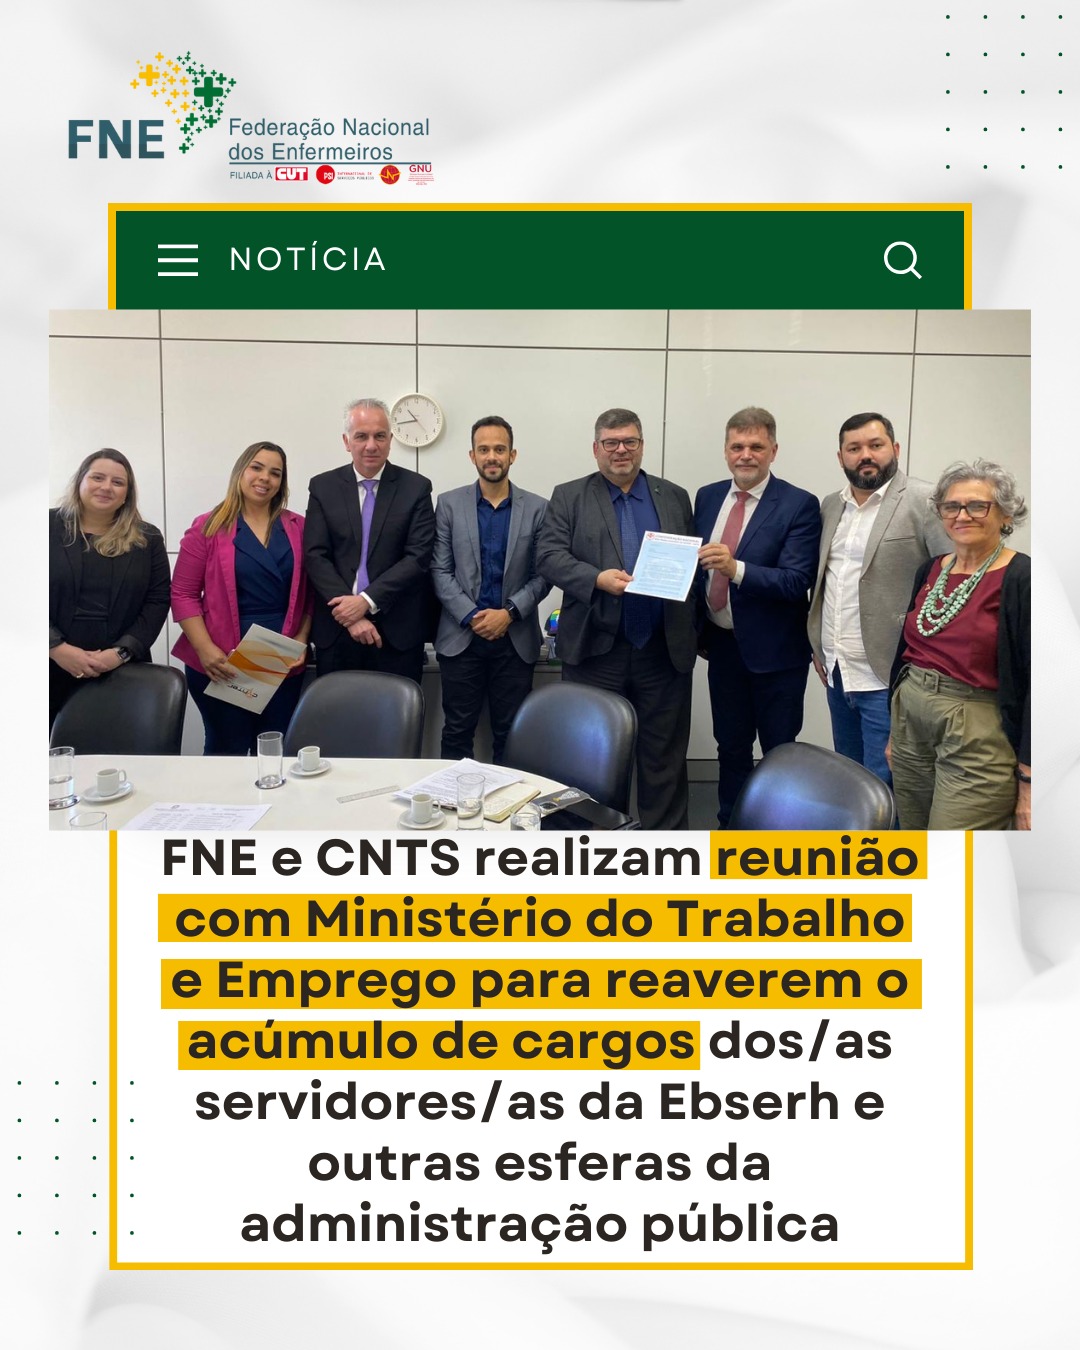 FNE e CNTS realizam reunião com Ministério do Trabalho e Emprego para reaverem o acúmulo de cargos dos/as servidores/as da Ebserh e outras esferas da administração pública